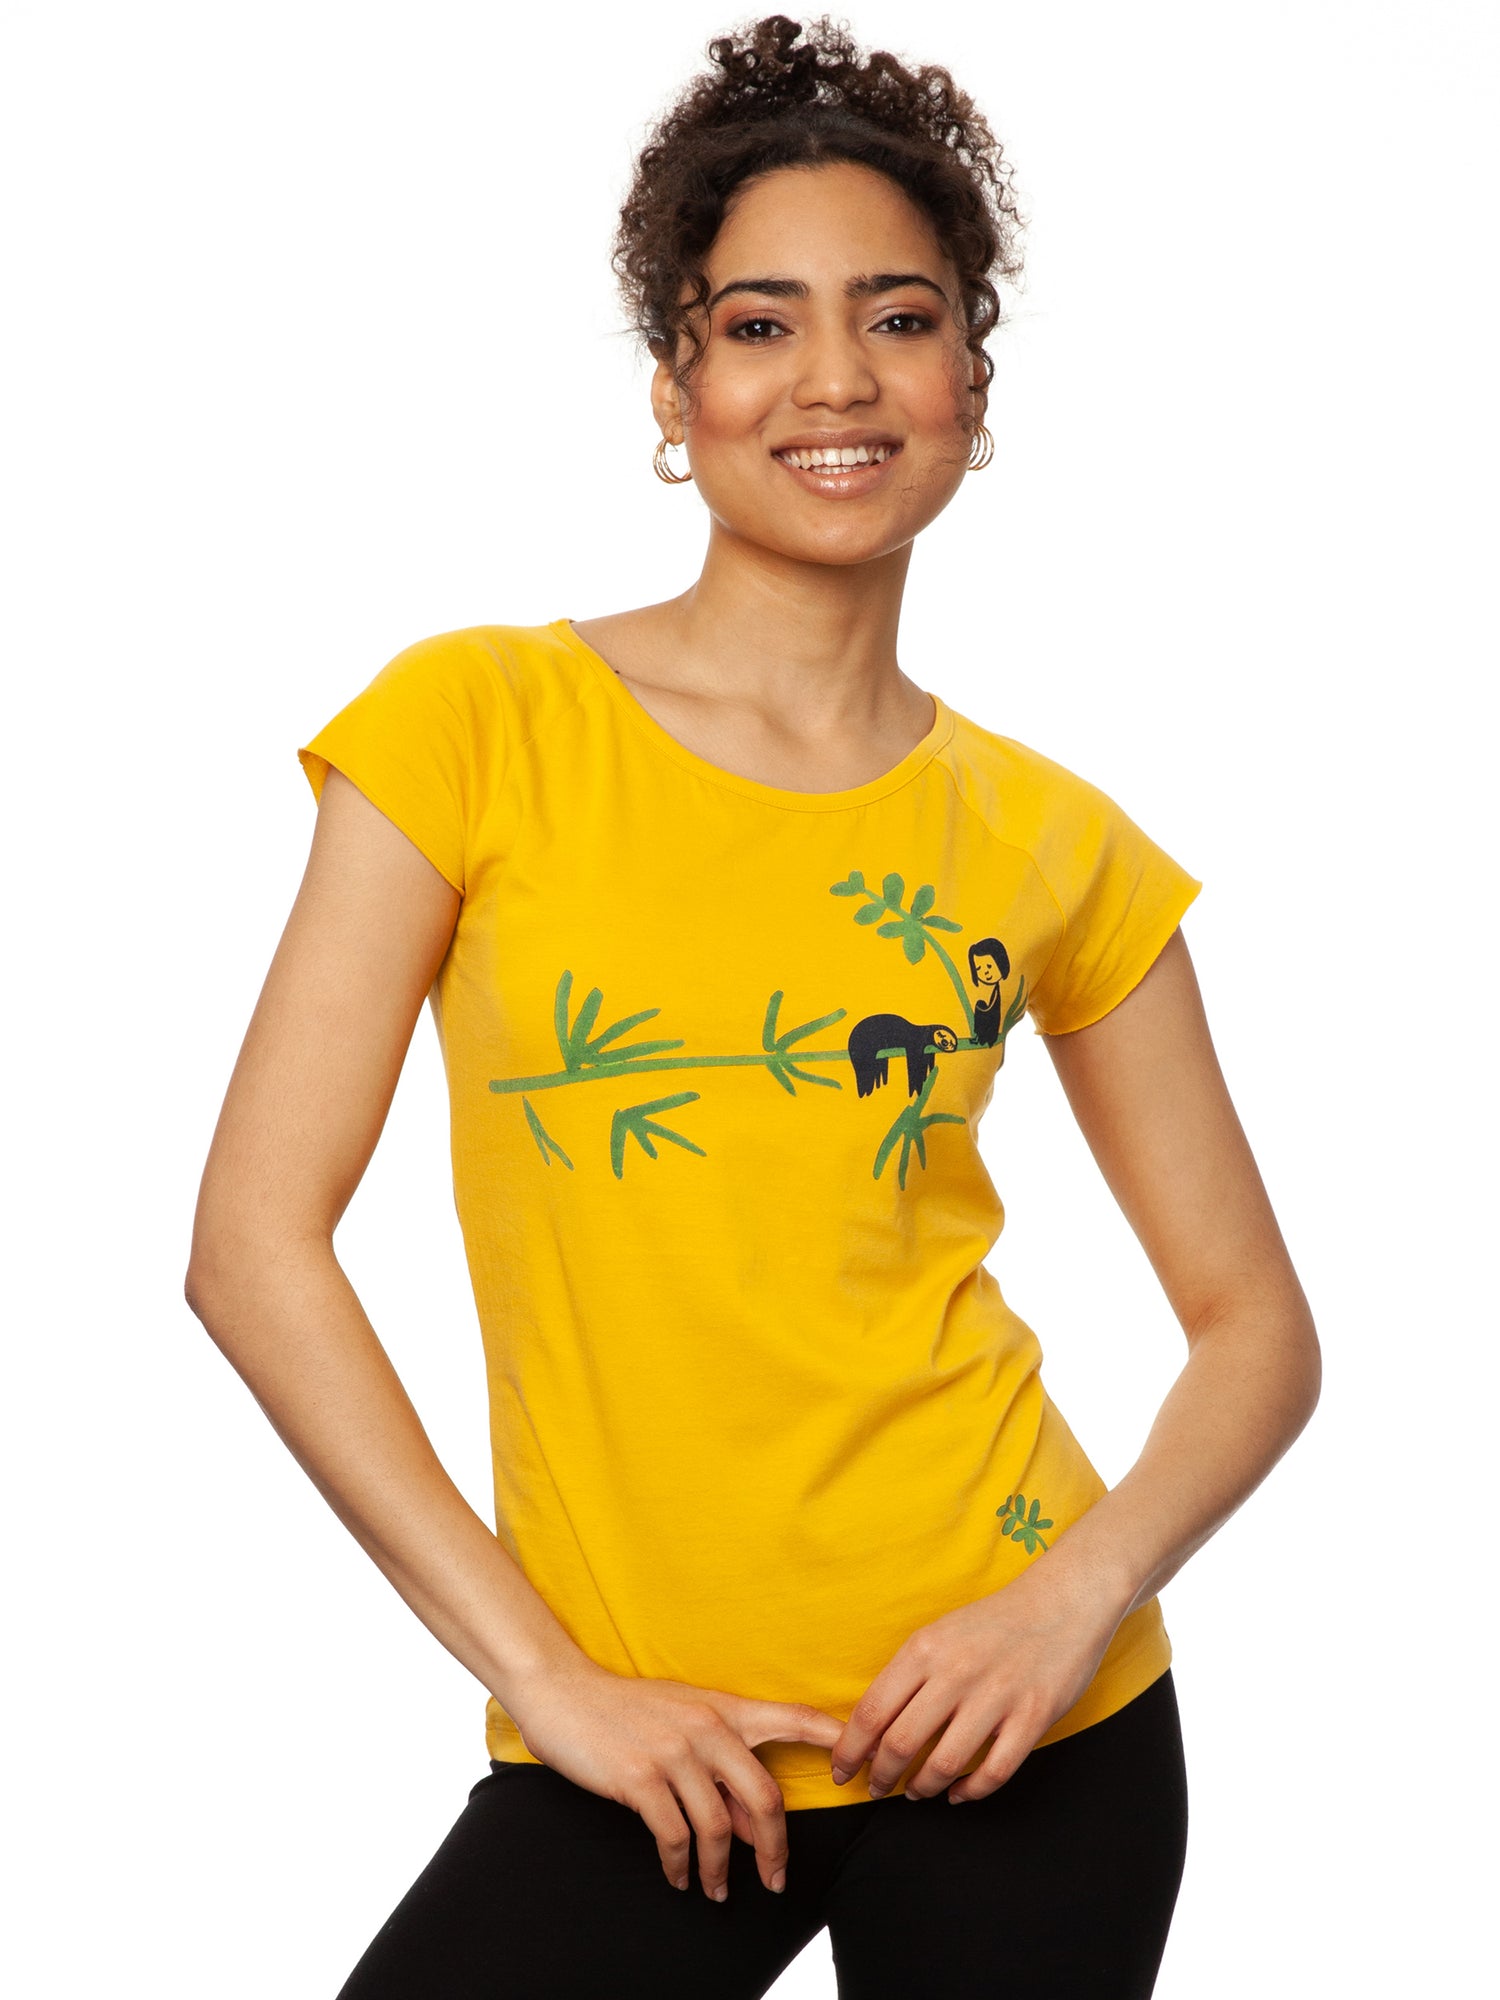 FellHerz T-Shirts bio, fair und vegan in gelb